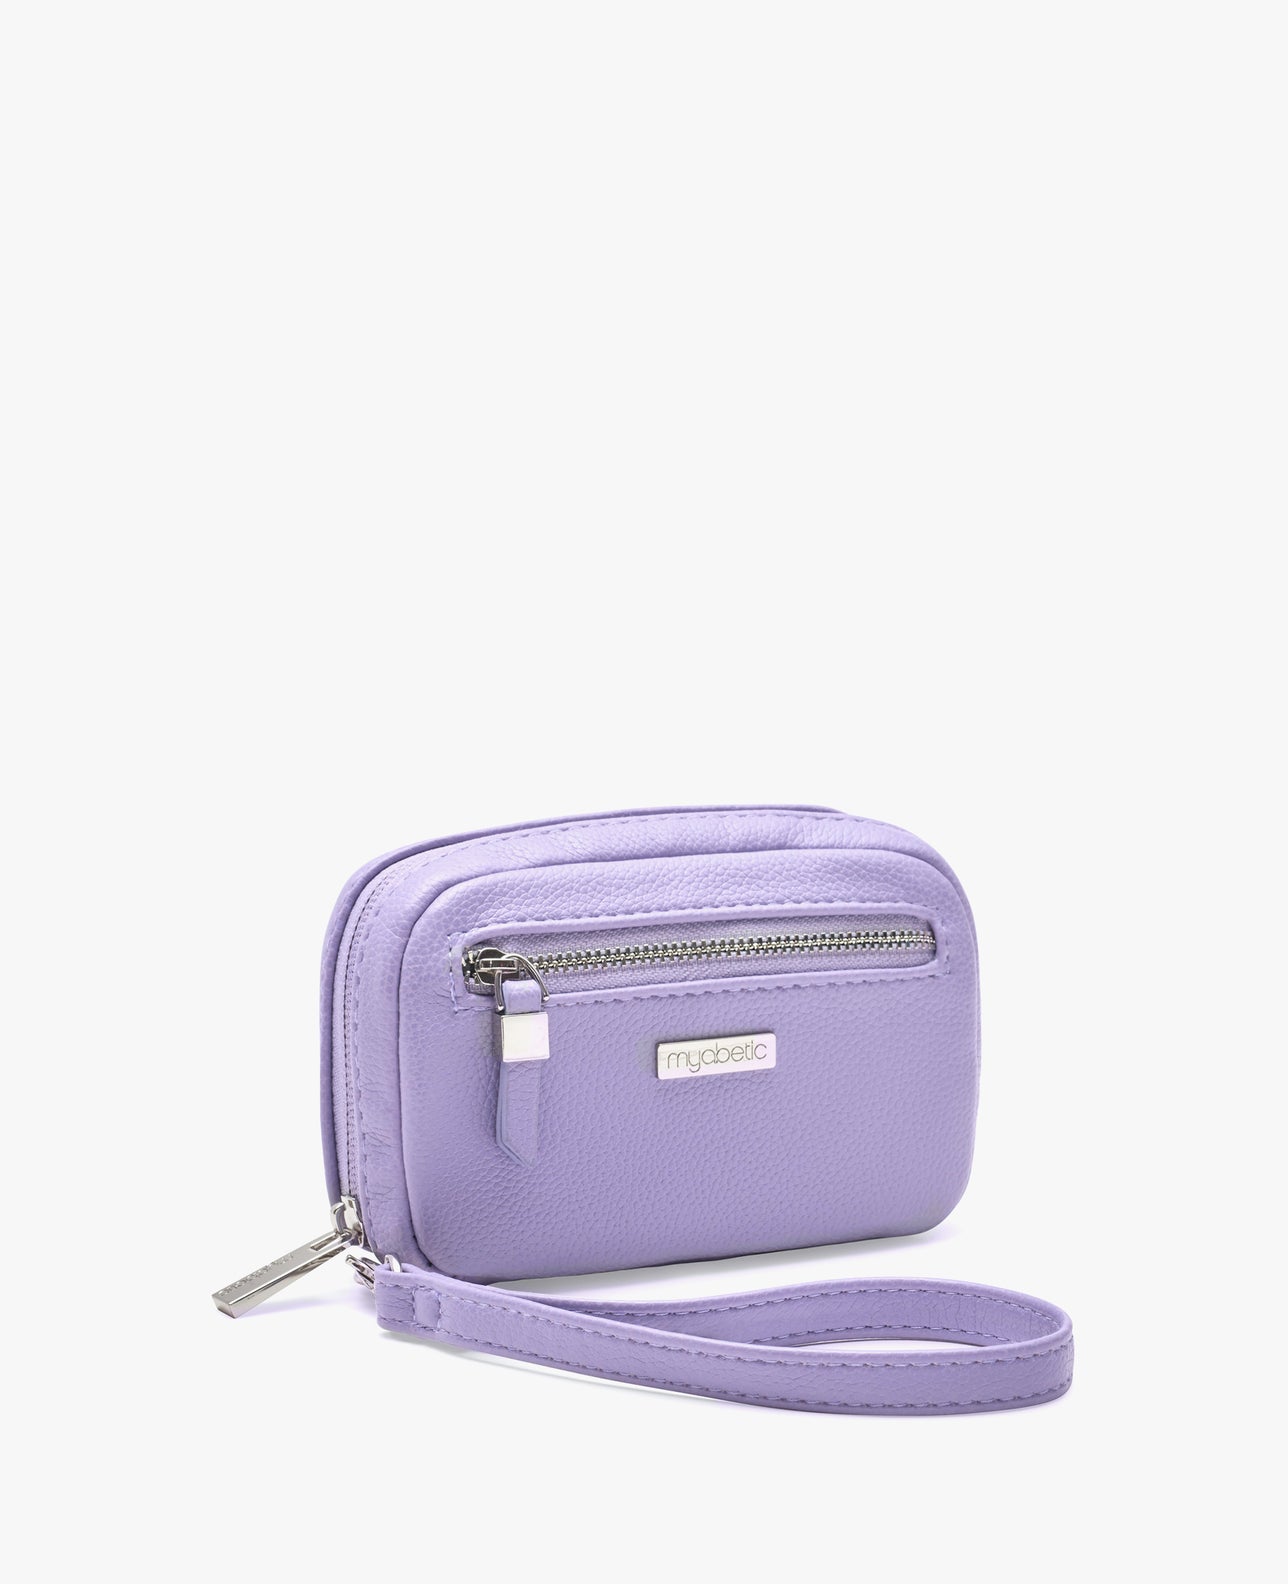 color:lavender